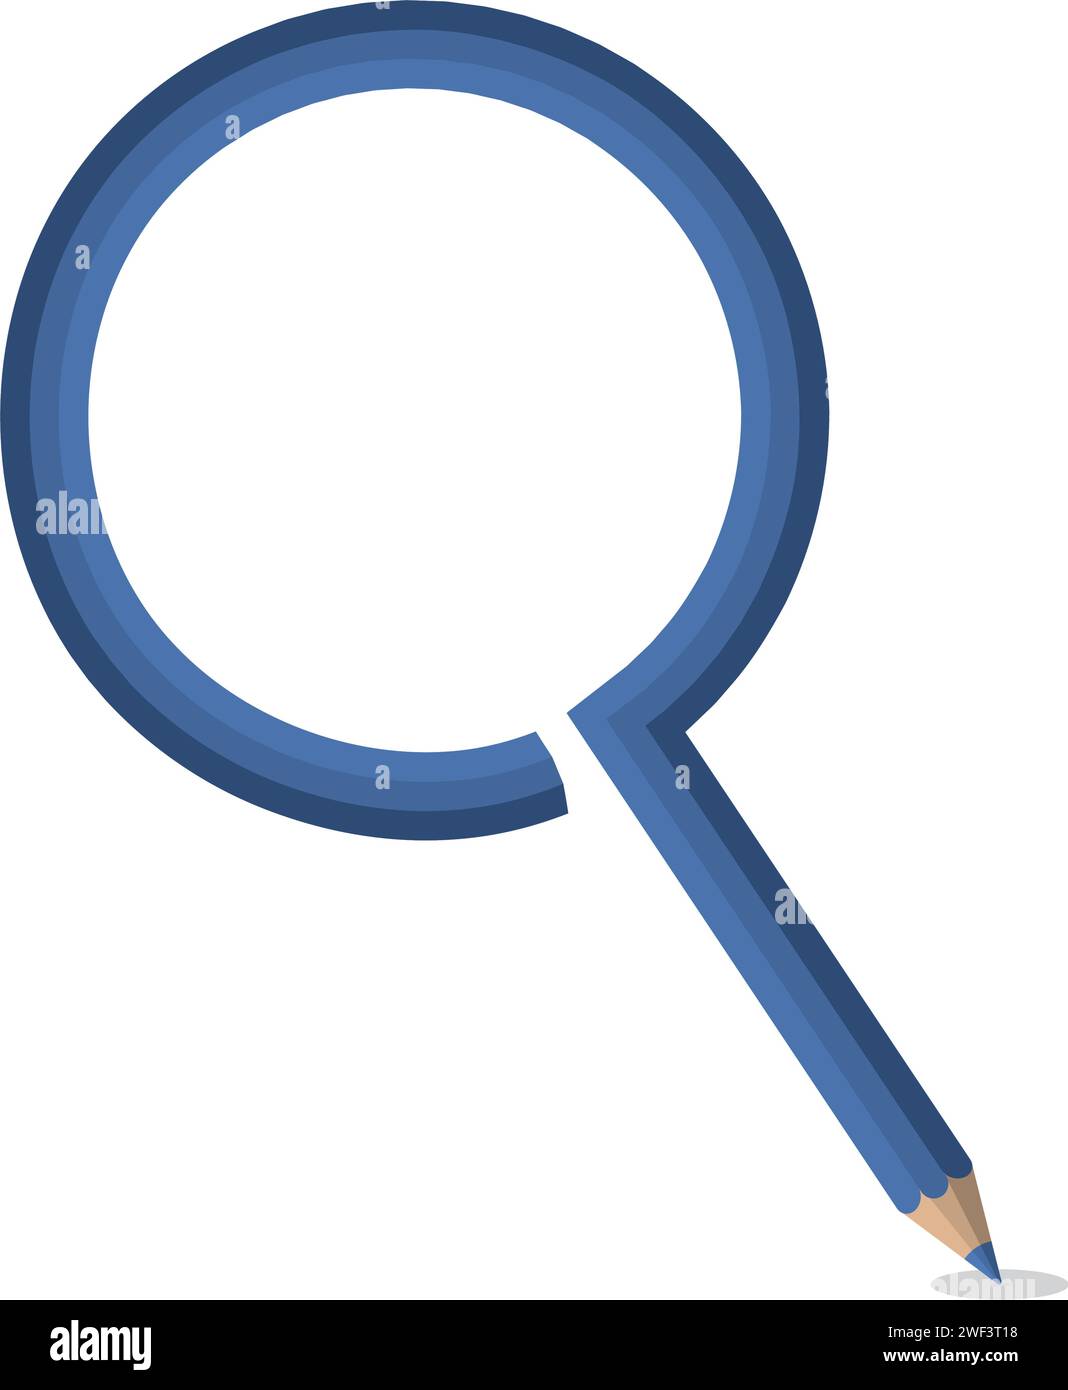 La matita blu si trasforma in una lente d'ingrandimento, simboleggiando l'apprendimento, la scoperta e la creatività nell'istruzione Illustrazione Vettoriale